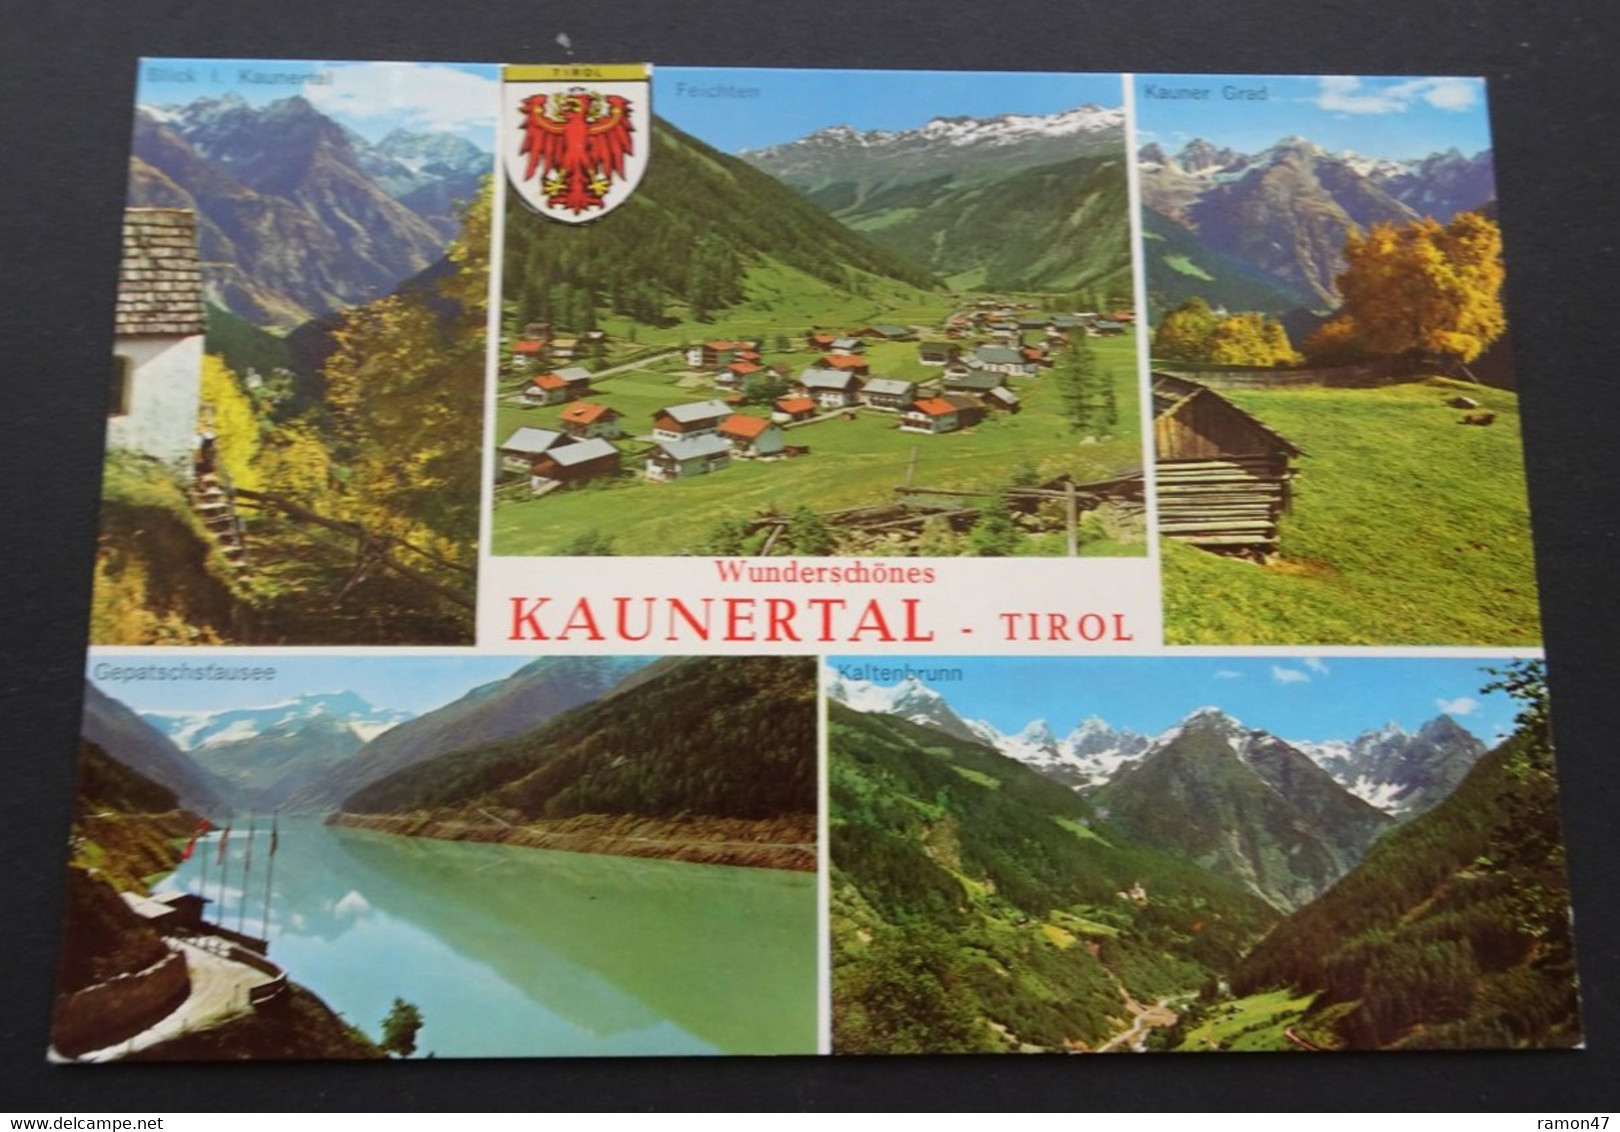 Wunderschönes Kaunertal, Tirol - Rudolf Mathis, Landeck - # 1227 - Kaunertal